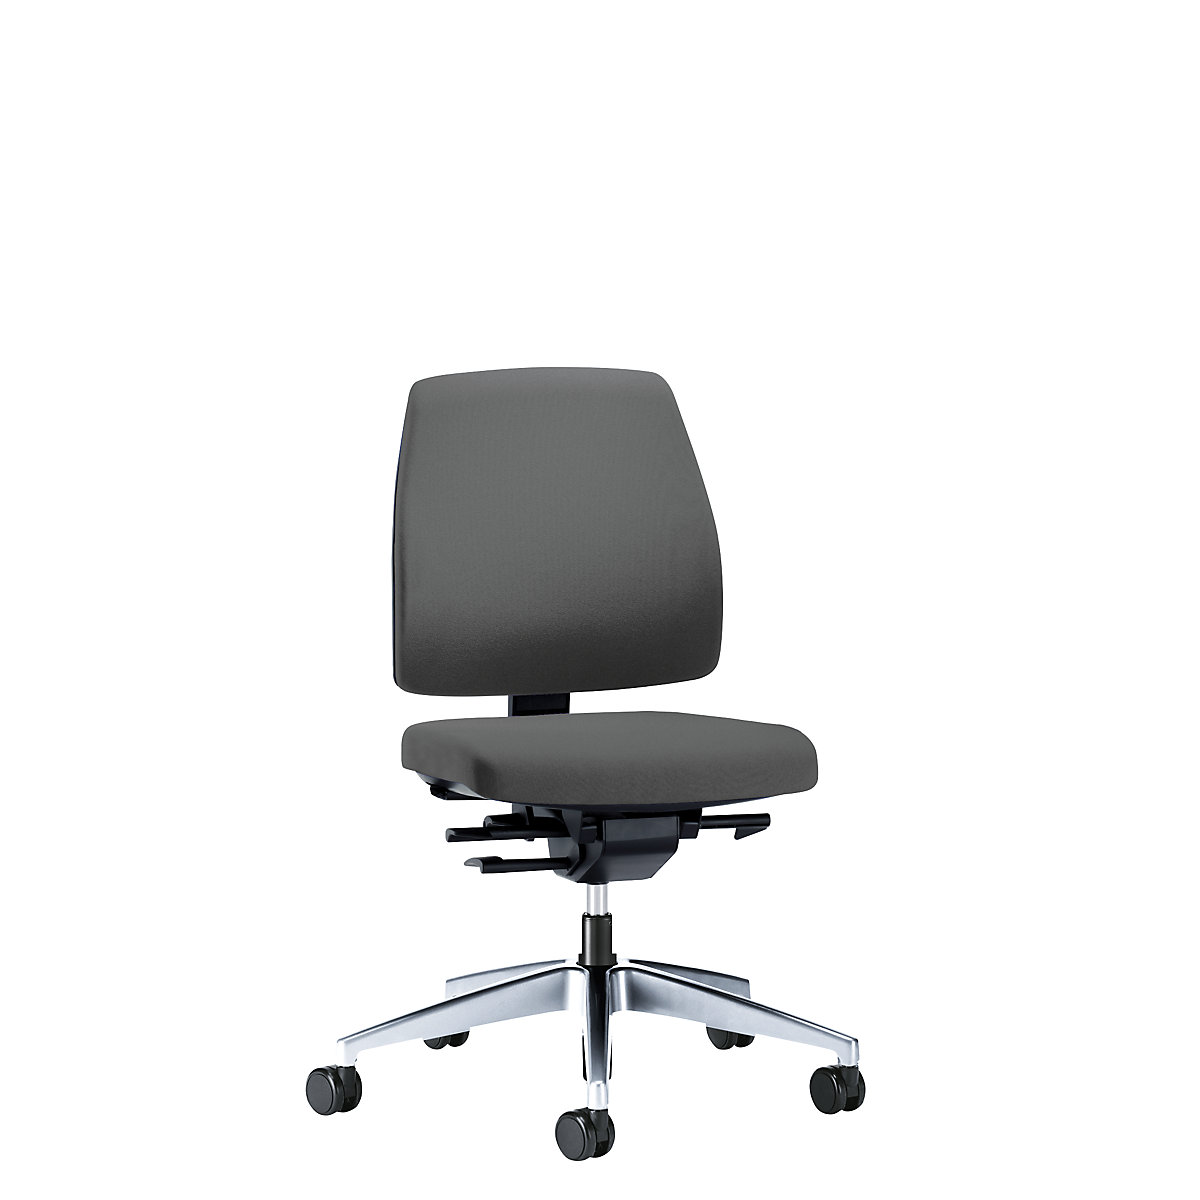 Bürodrehstuhl GOAL, Rückenlehnenhöhe 430 mm interstuhl, Gestell poliert, mit weichen Rollen, eisengrau, Sitztiefe 410 mm-1